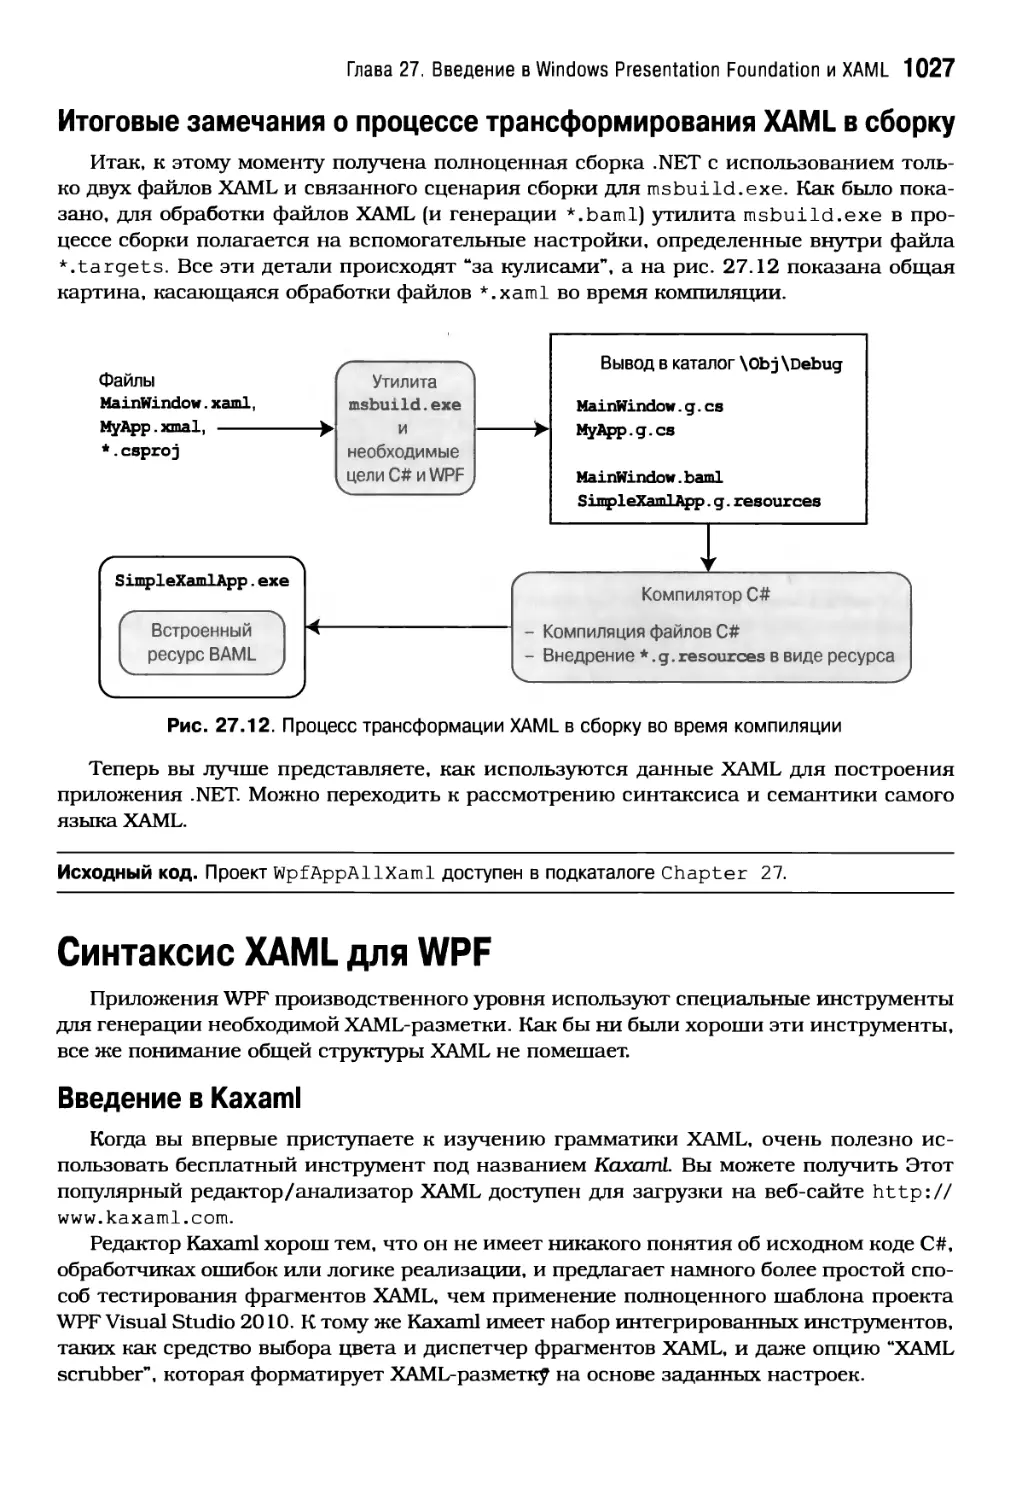 Итоговые замечания о процессе трансформирования XAML в сборку
Синтаксис XAML для WPF